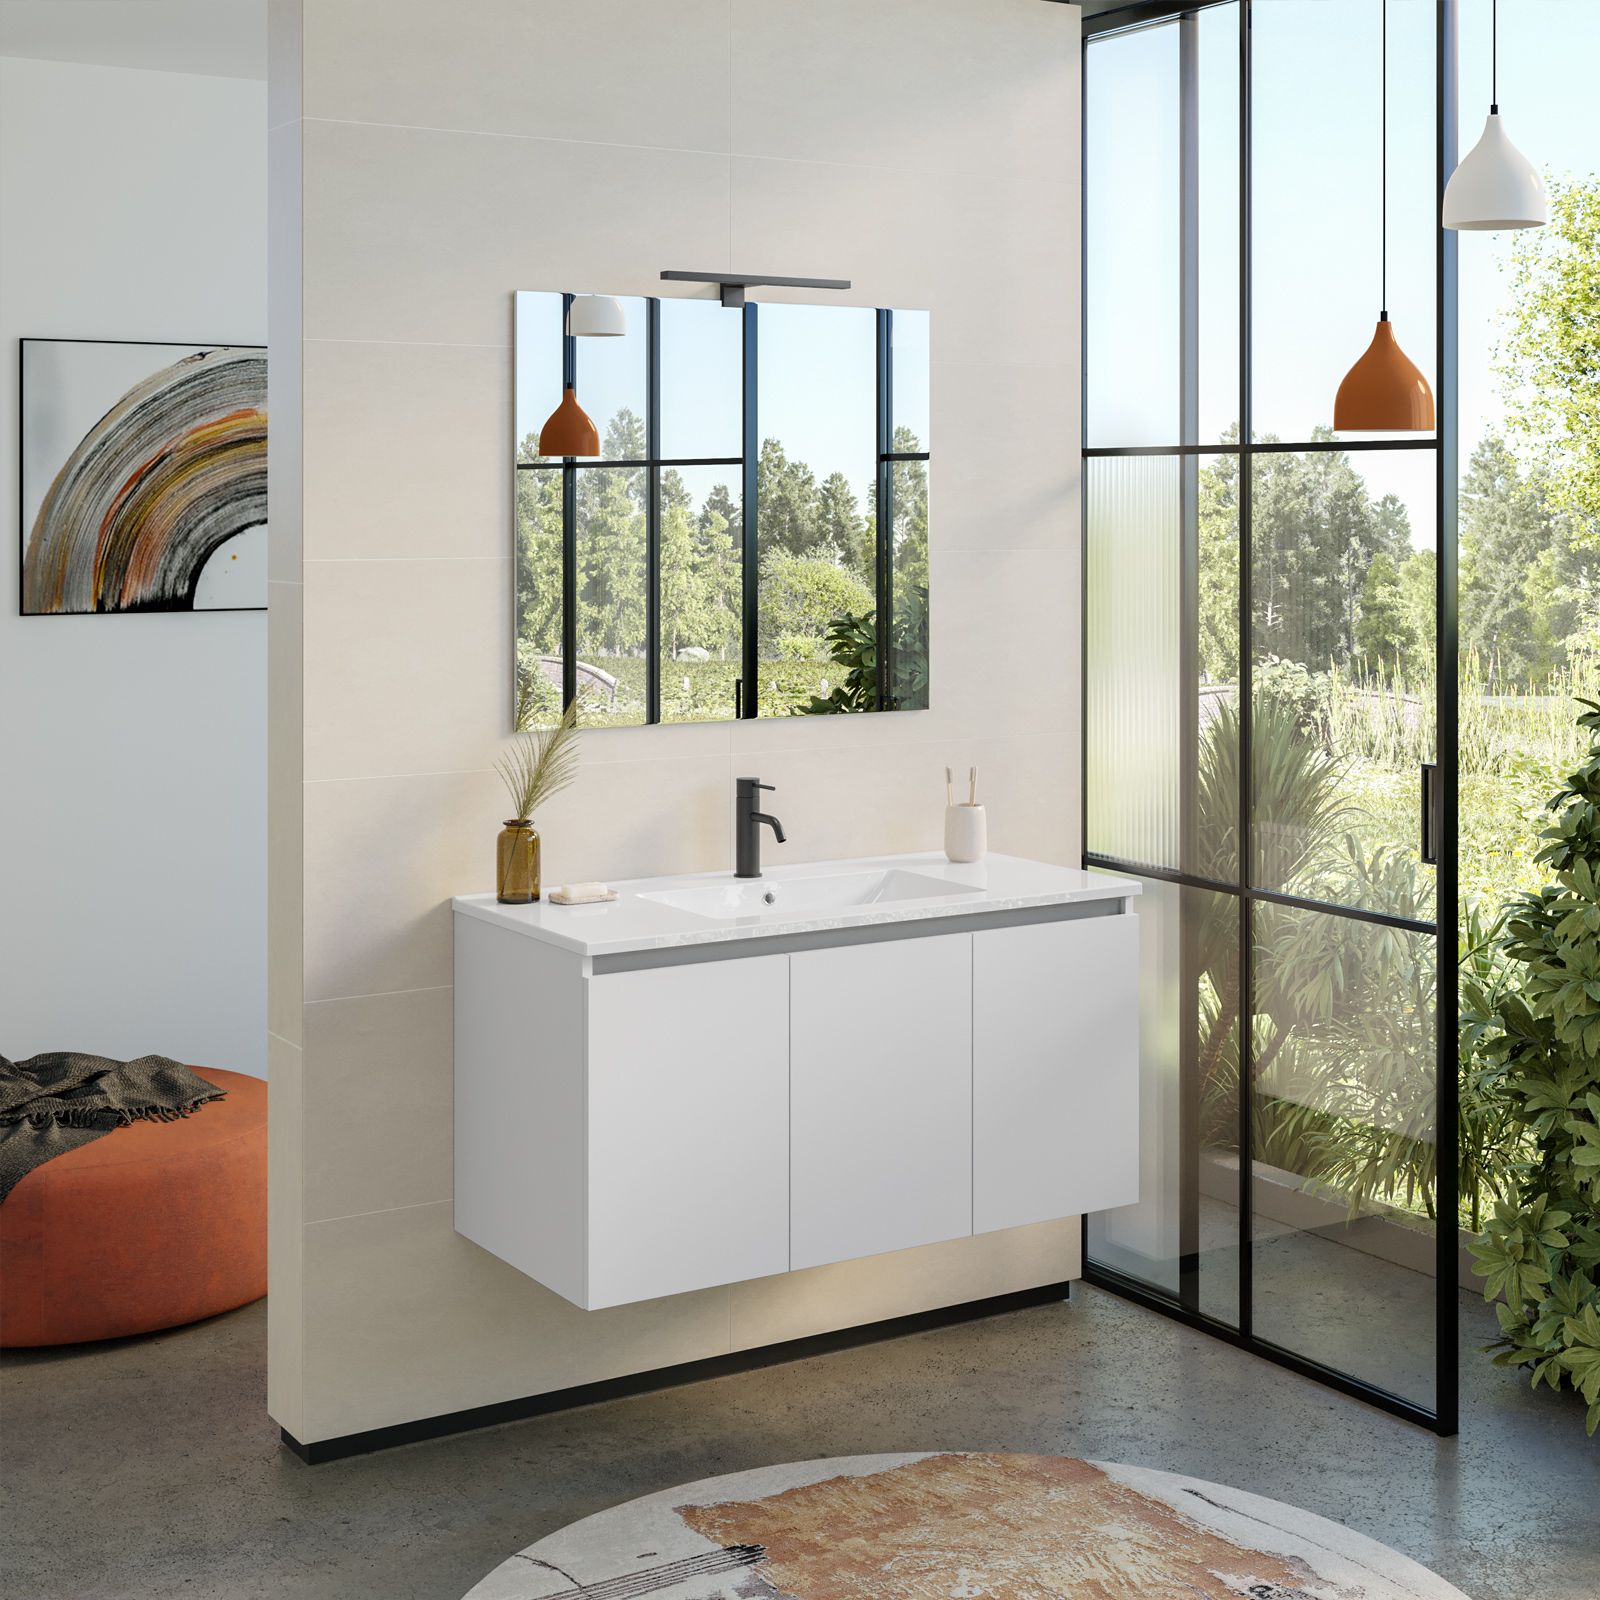 Bagno completo di mobile bianco opaco 100 cm, specchio led, rubinetti e  sanitari